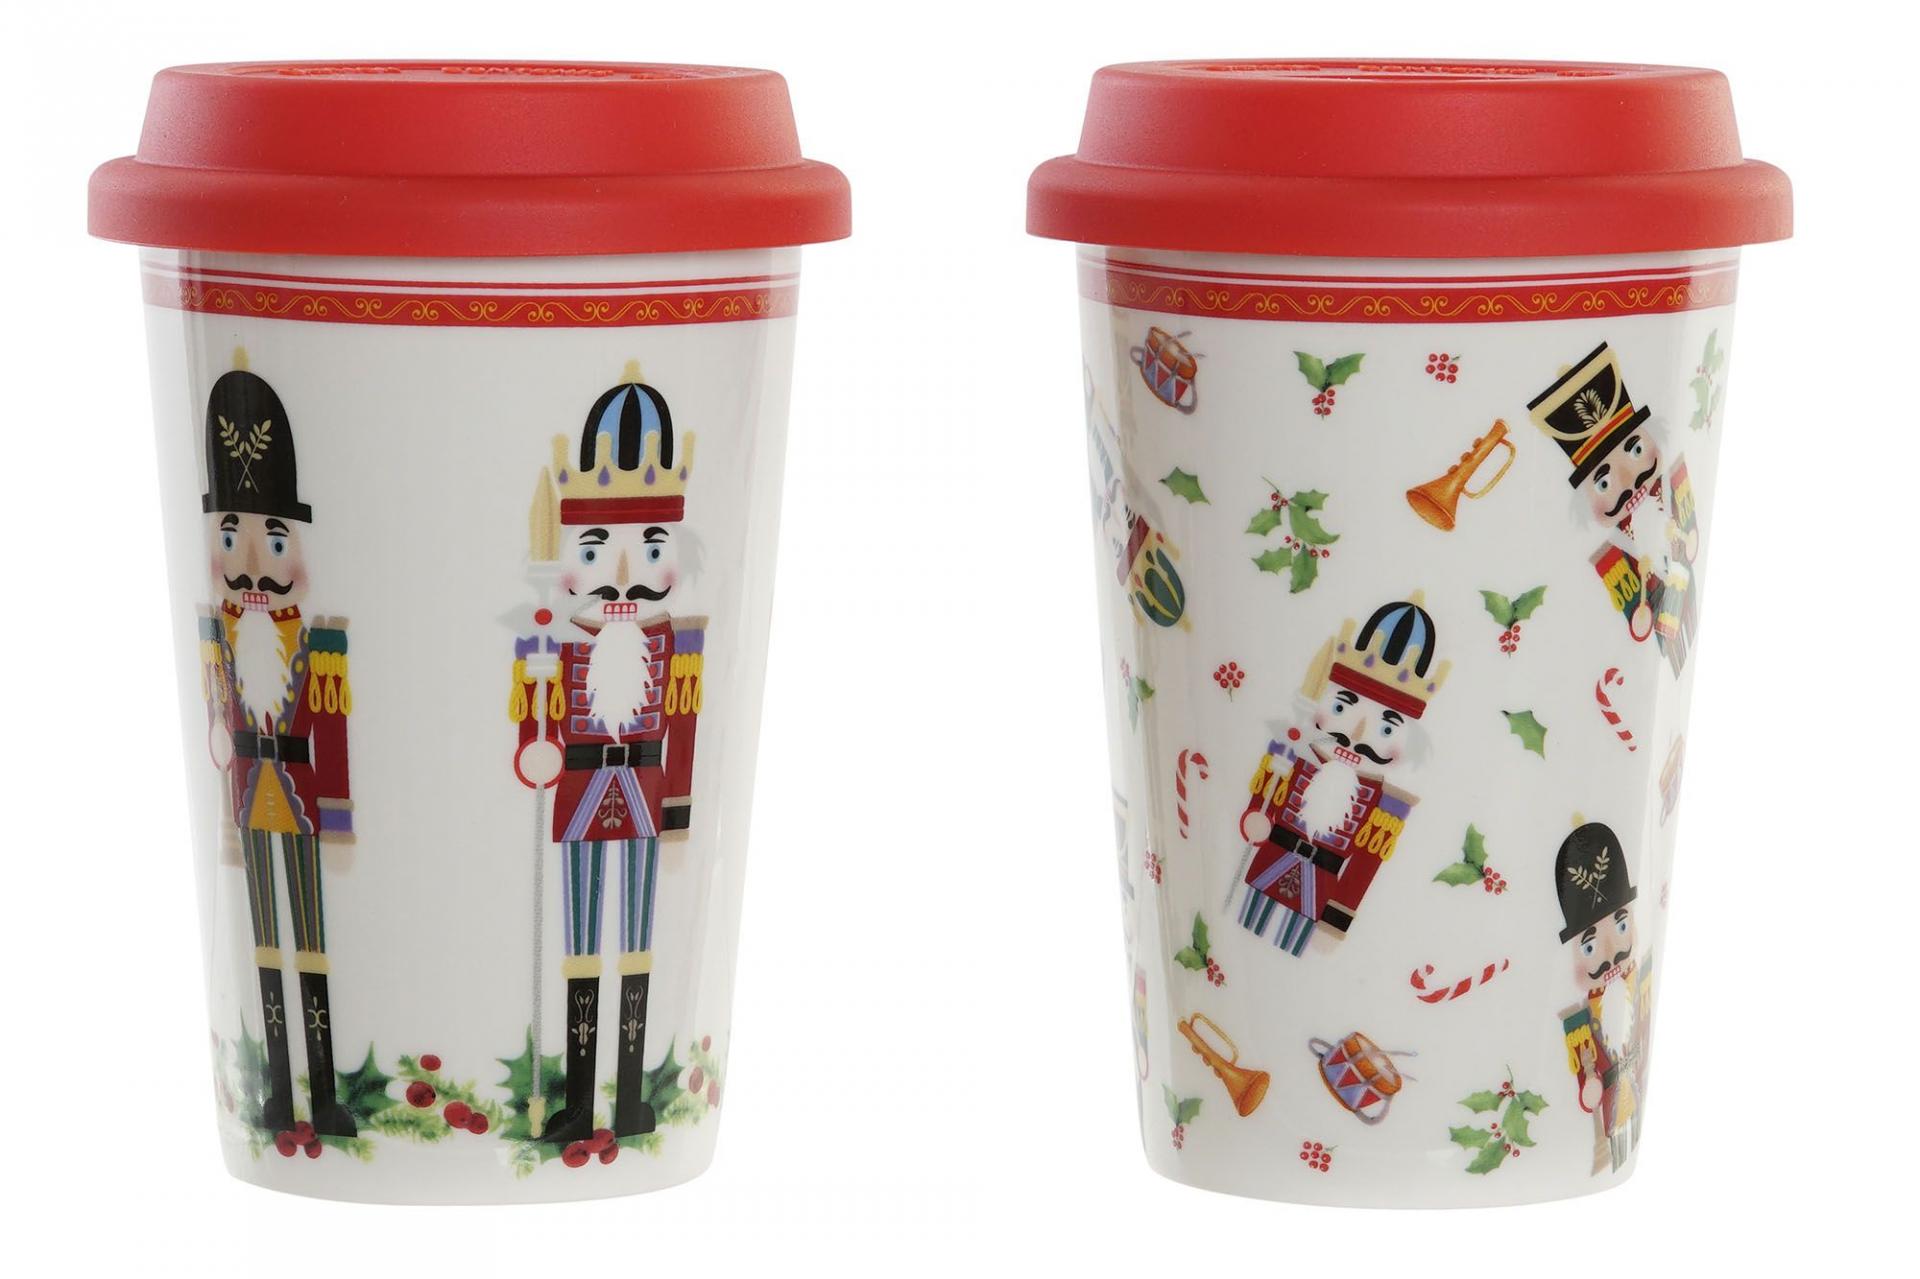 set-dos-mug-porcelana-con-tapa-silicona-roja-decoracion-navidad-soldados-soldaditos-cascanueces-item-NV-183822-regalo-lomejorsg.jpg